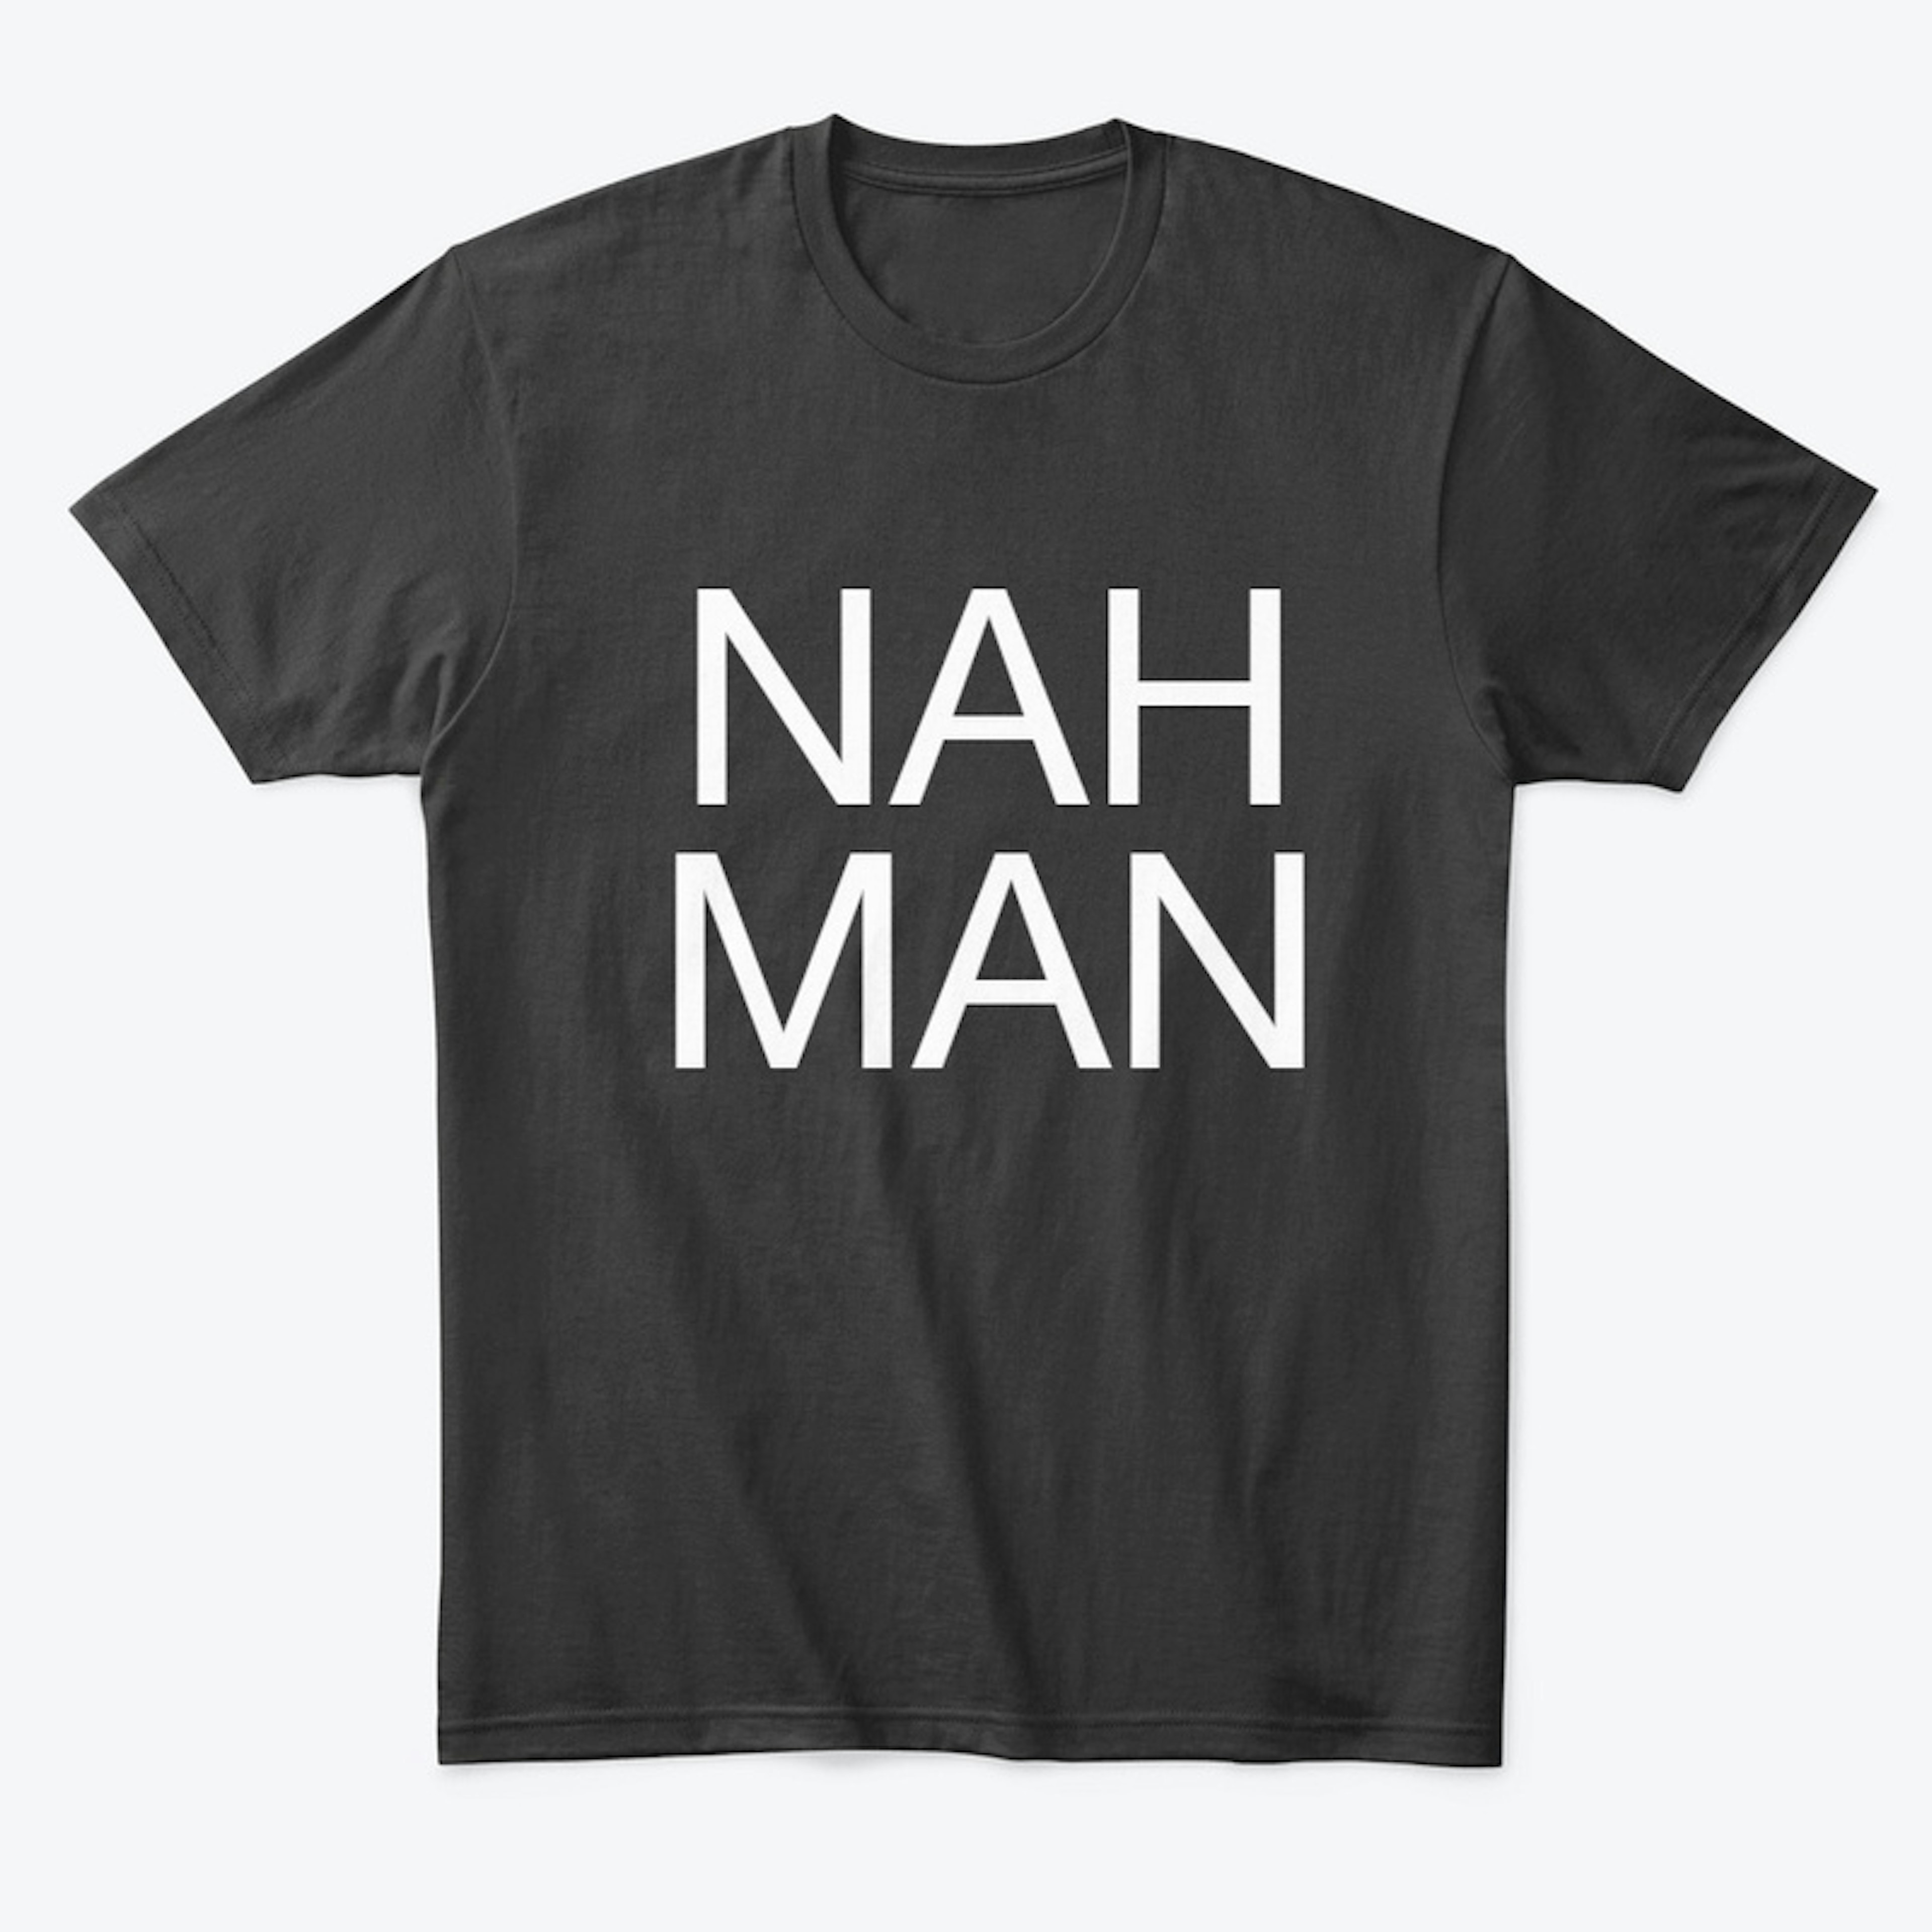 The Nah Man Shirt